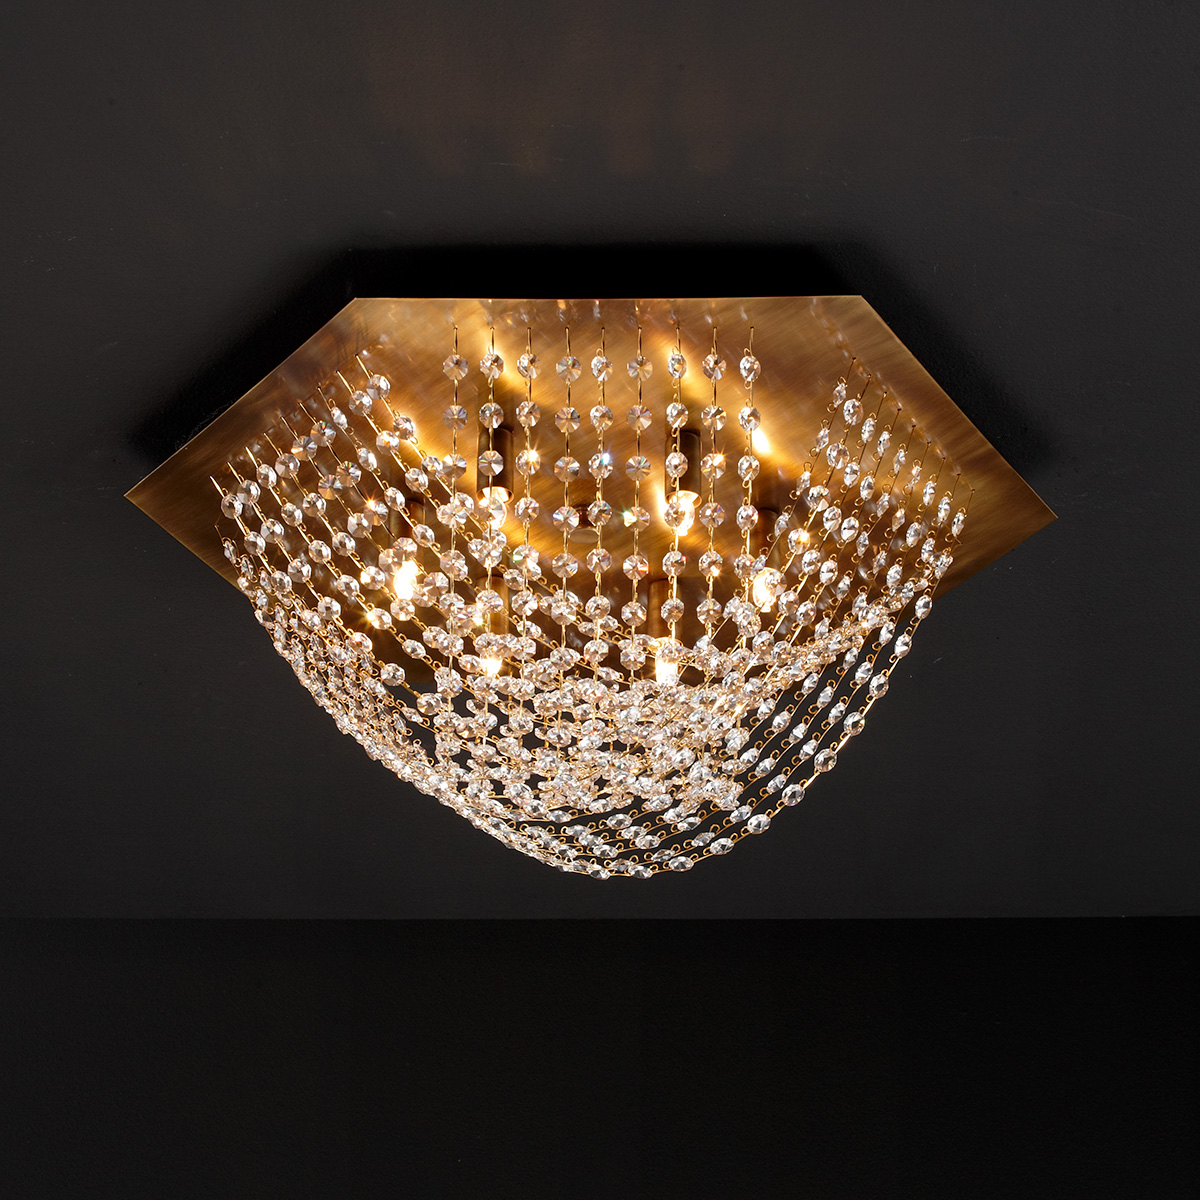 Κλασικό φωτιστικό οροφής με κρύσταλλα ΔΙΟΝ classic ceiling lamp with crystal accents